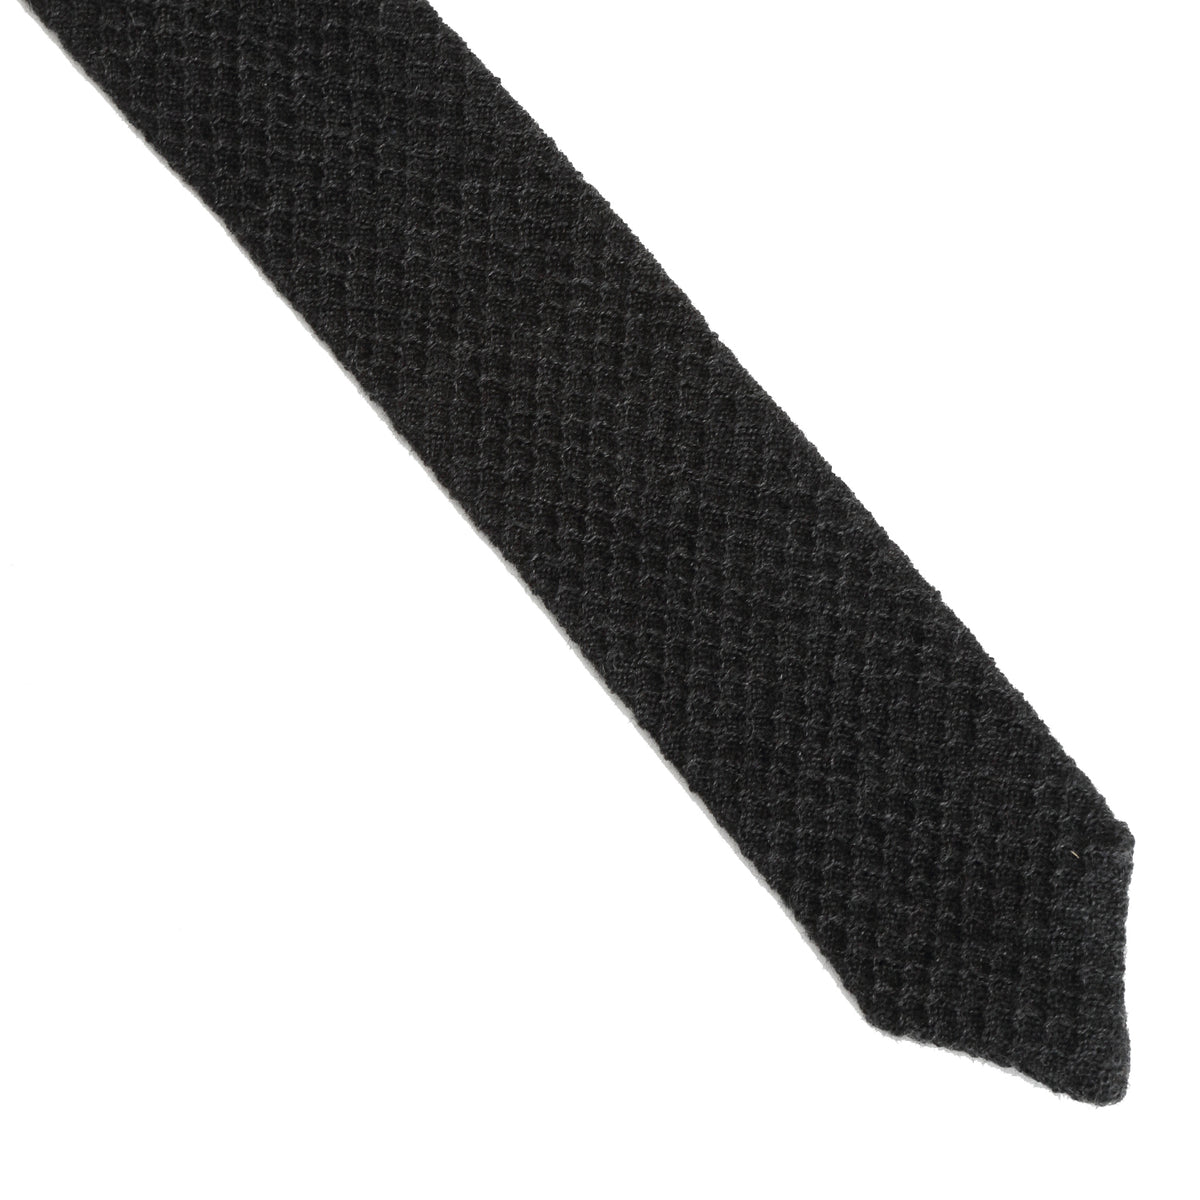 Lardini - Wool Tie - Charcoal